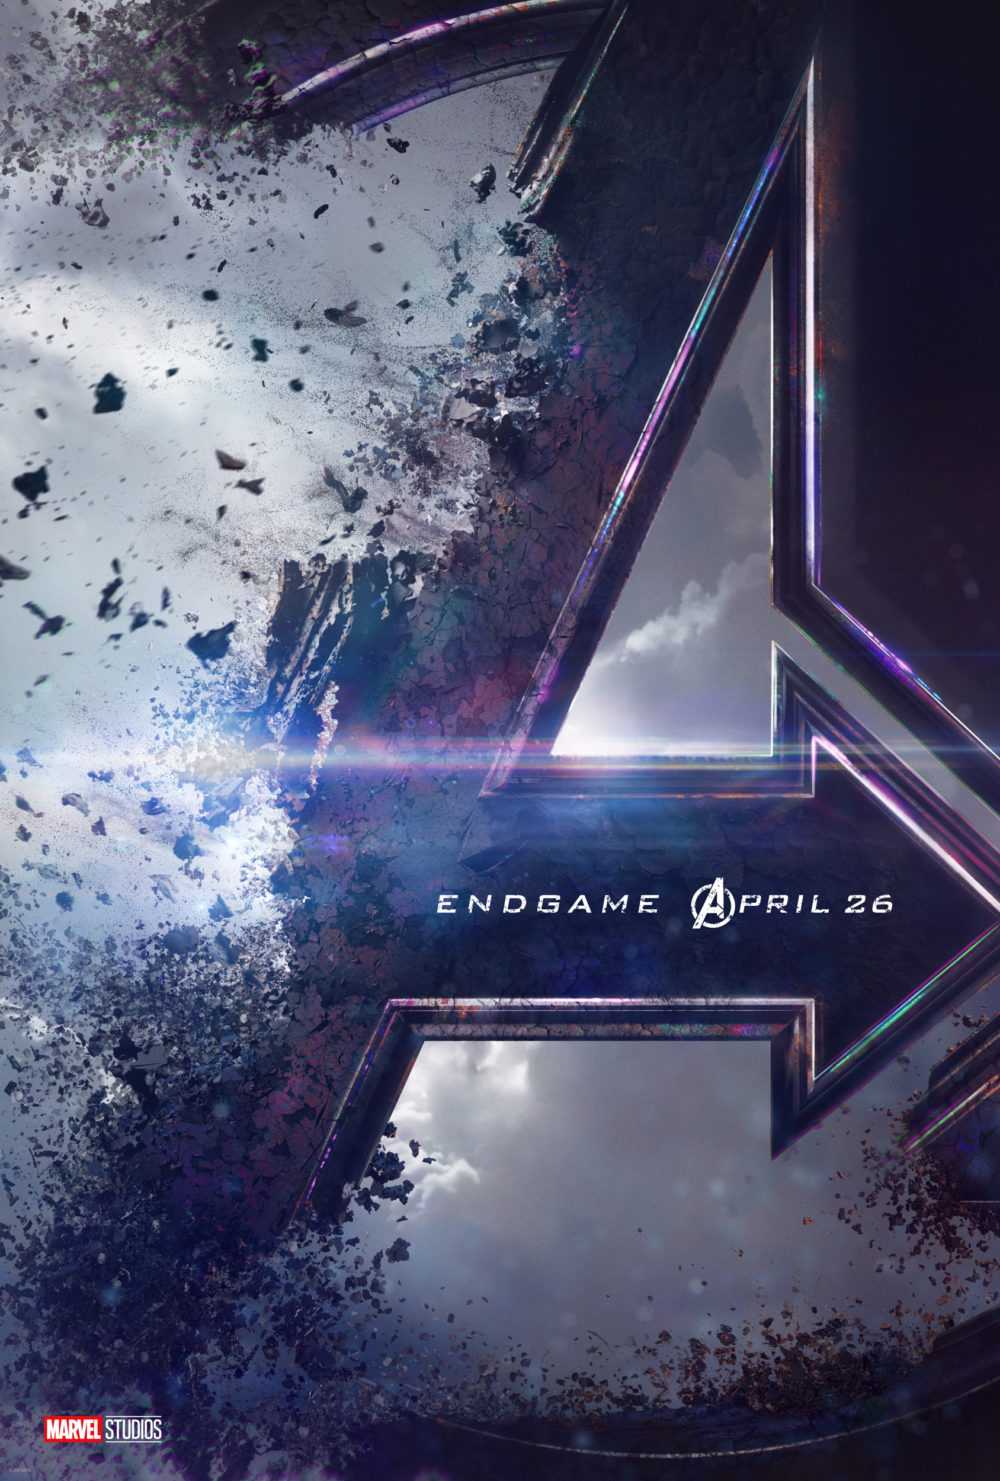 NEW Avengers 4 Trailer and Poster! Plus Reaction Video! #AvengersEndgame